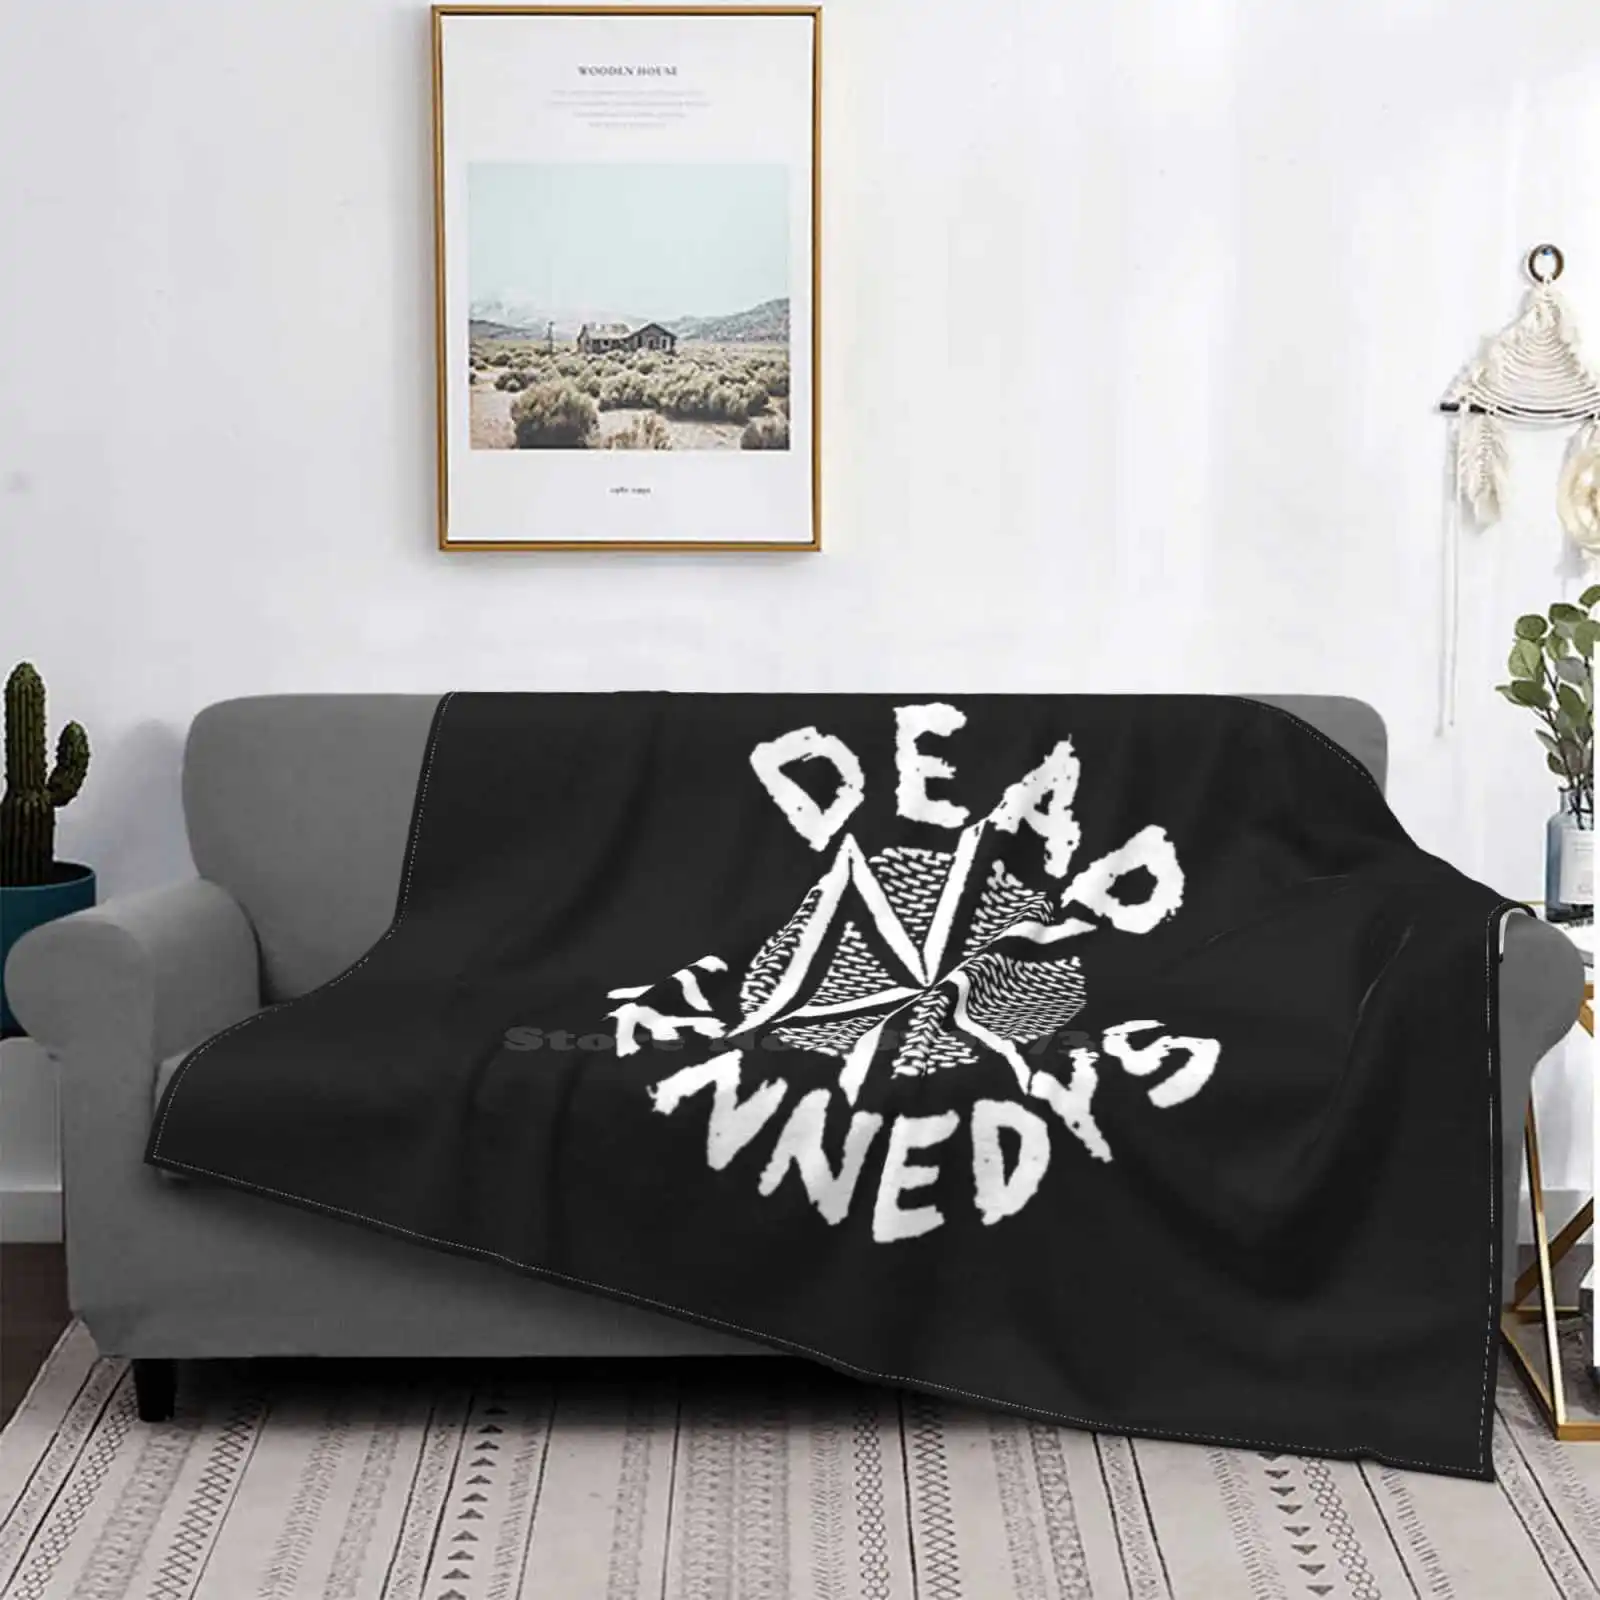 

Удобное одеяло для кровати Dead нет, с логотипом, высокое качество, мягкое одеяло для отдыха, Камбоджа, мертвецы, Кеннет, Хардкор, панк, серфинг...